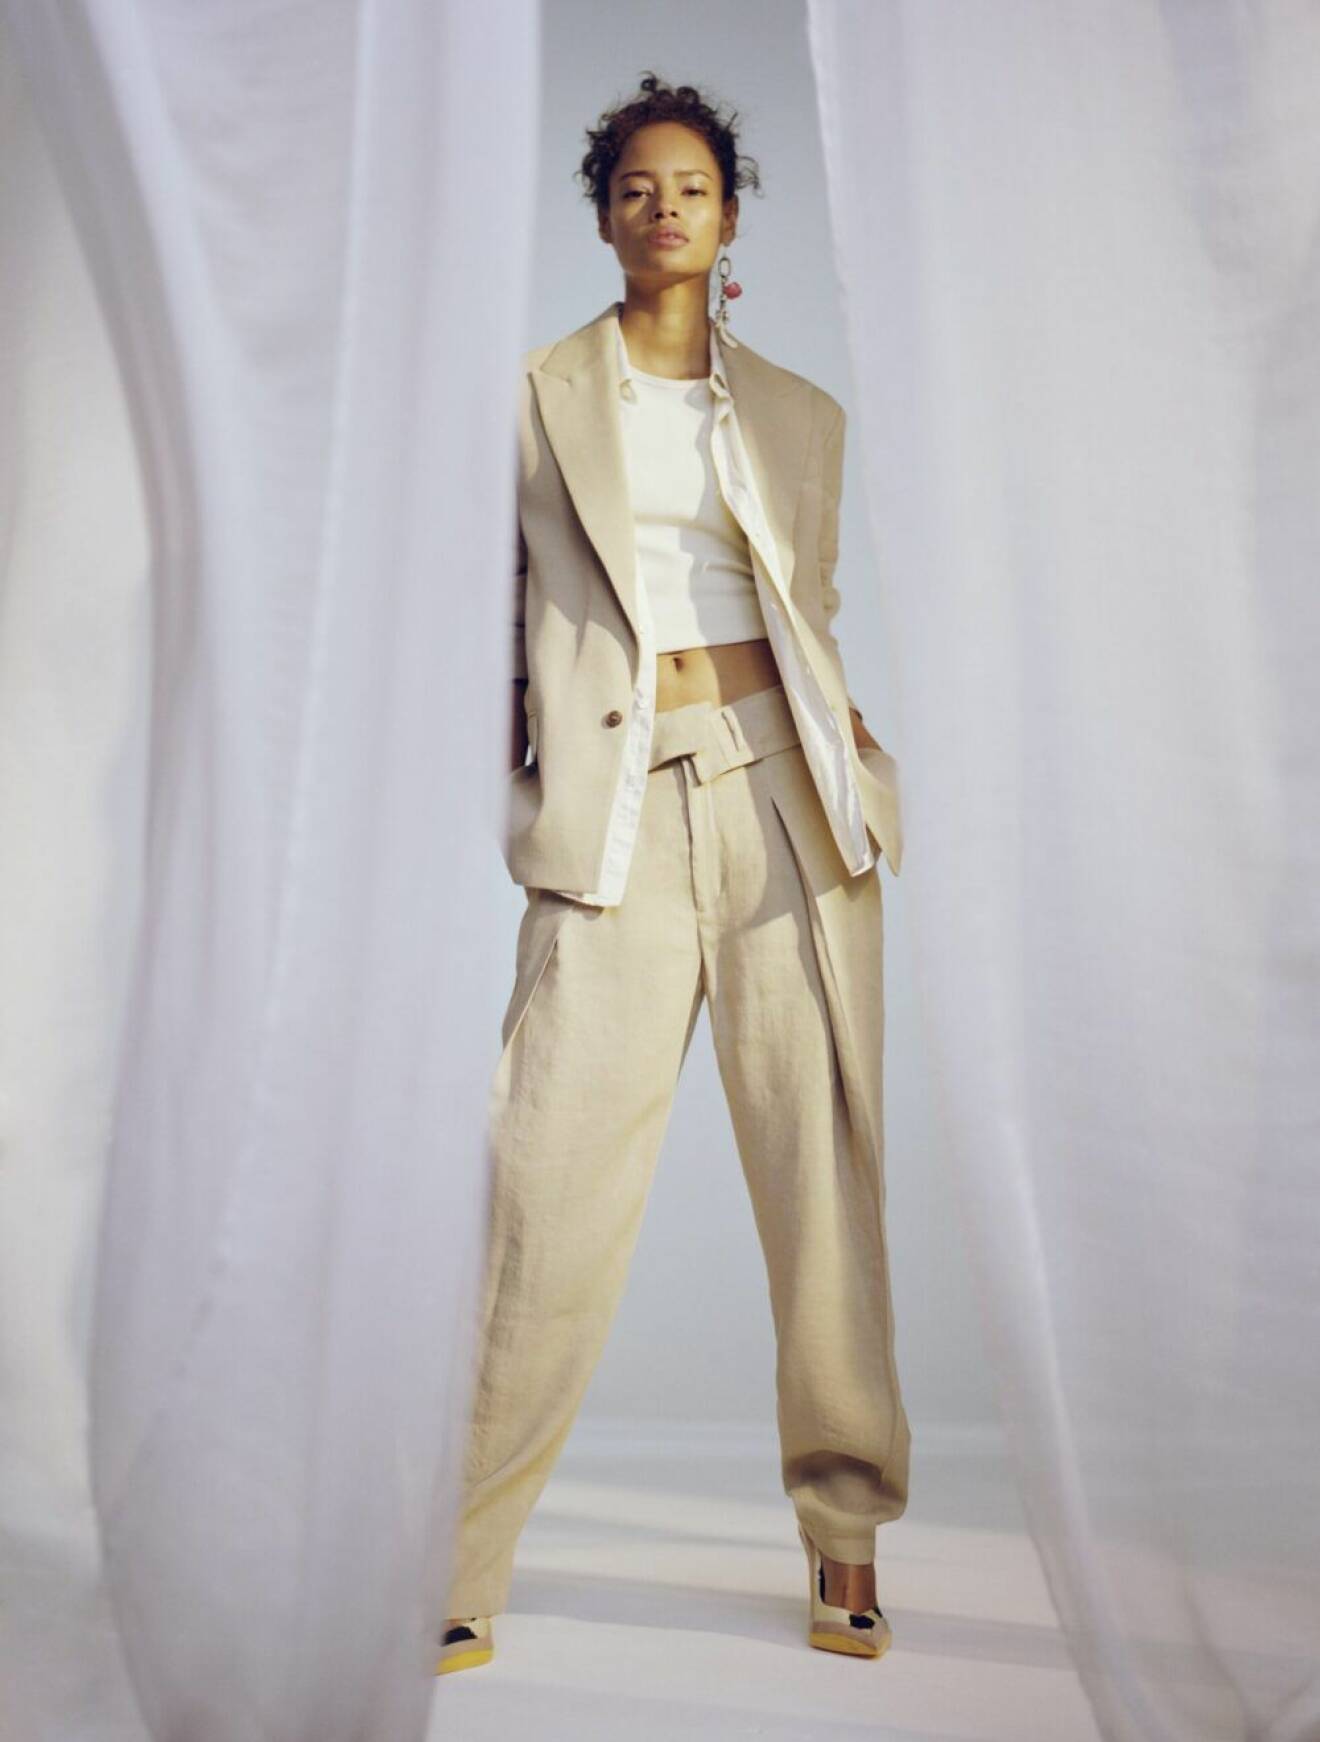 Kostym i ljusbeige från H&M